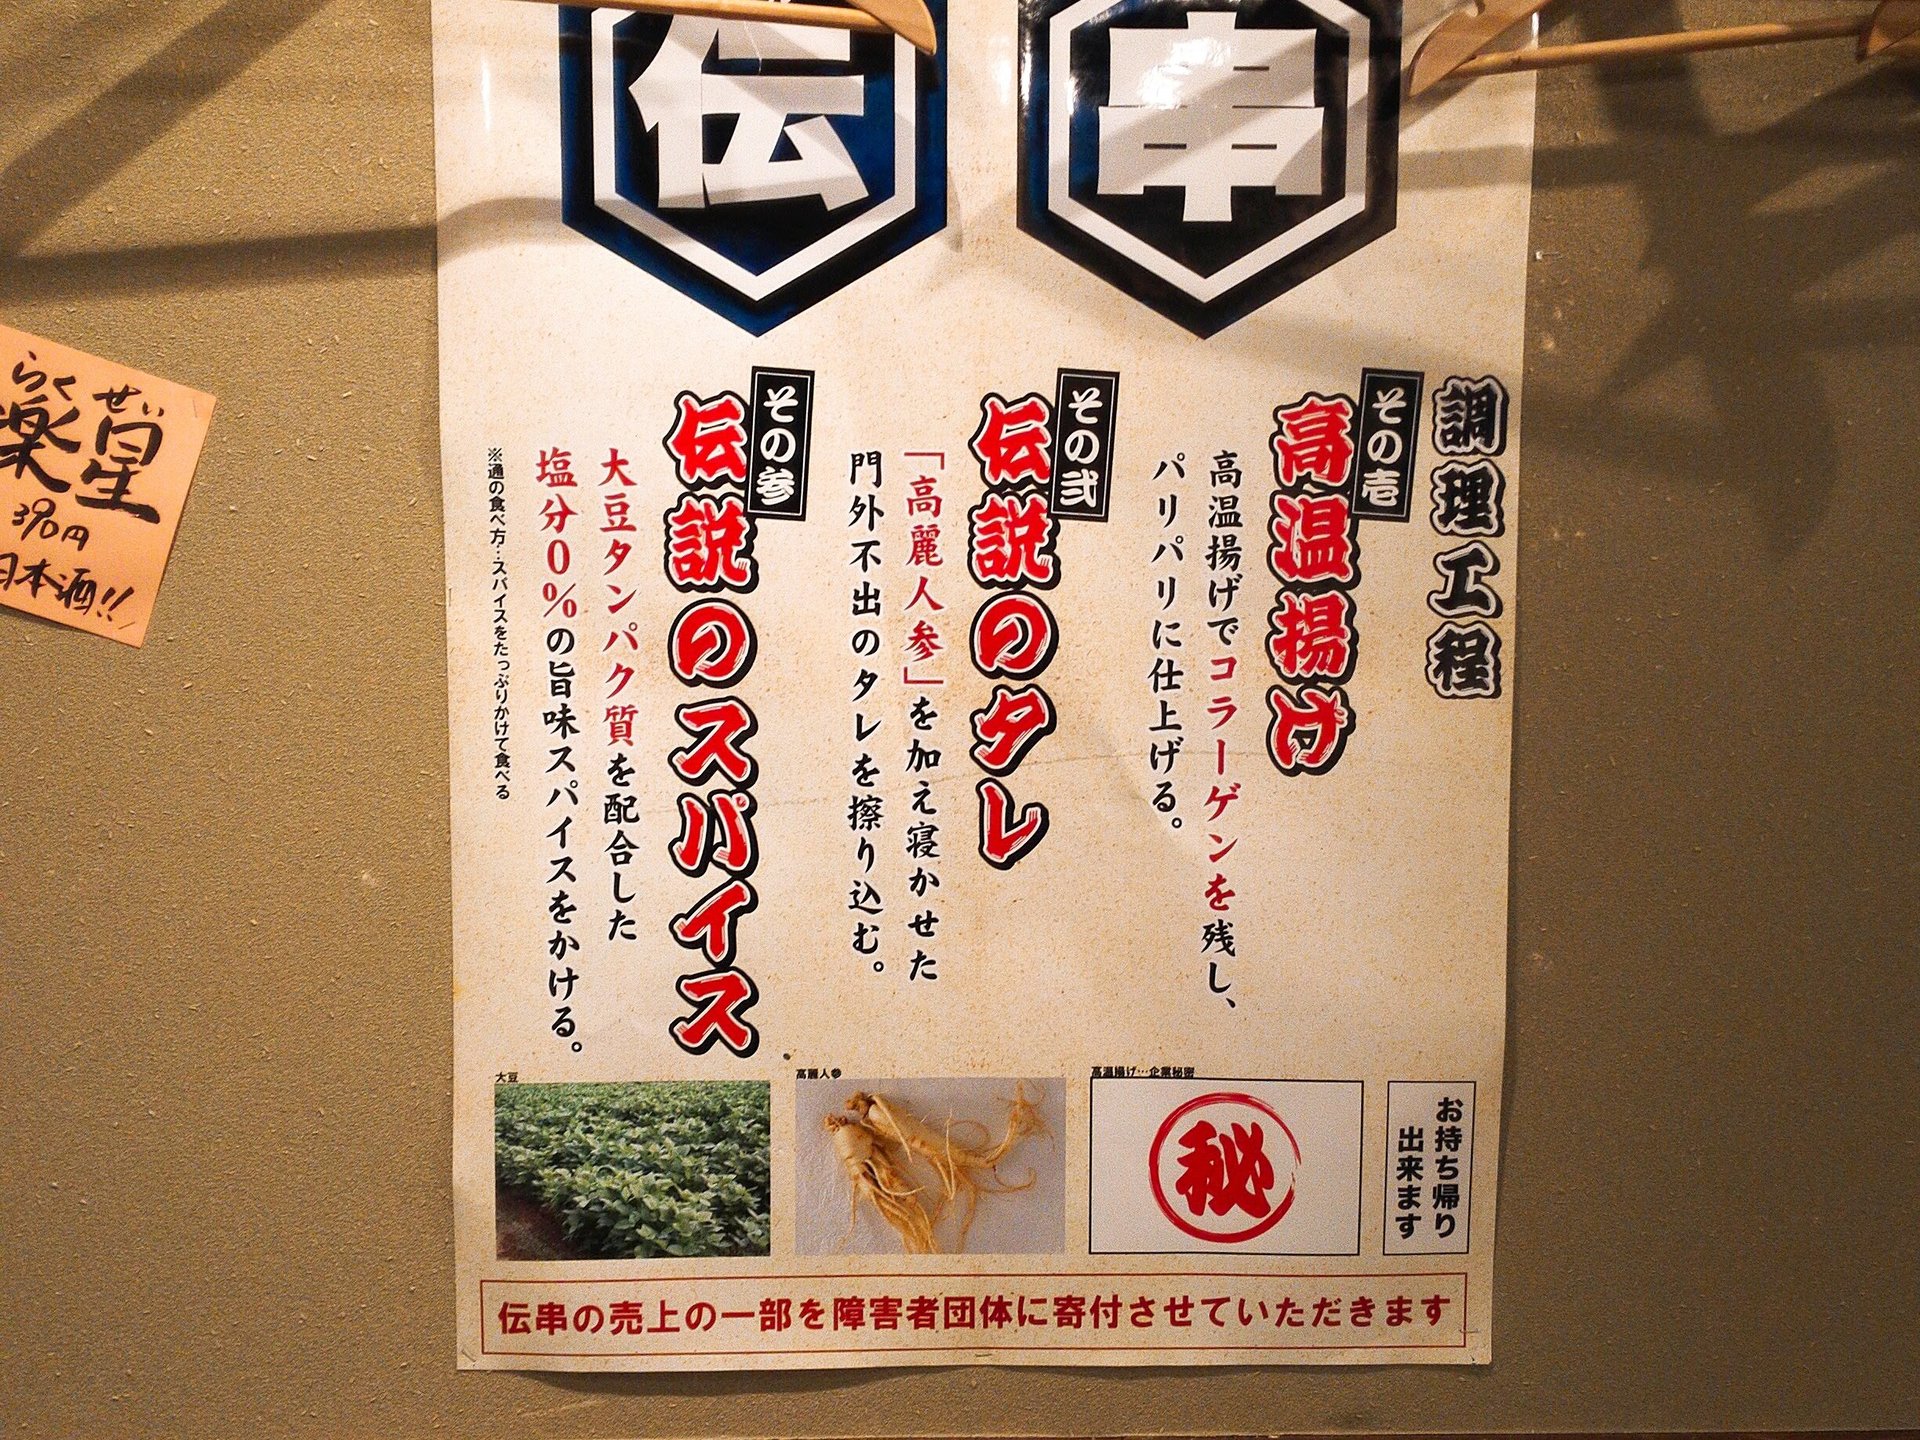 愛知県で2000万本を売り上げた伝説の串やの東京初上陸店「新時代」